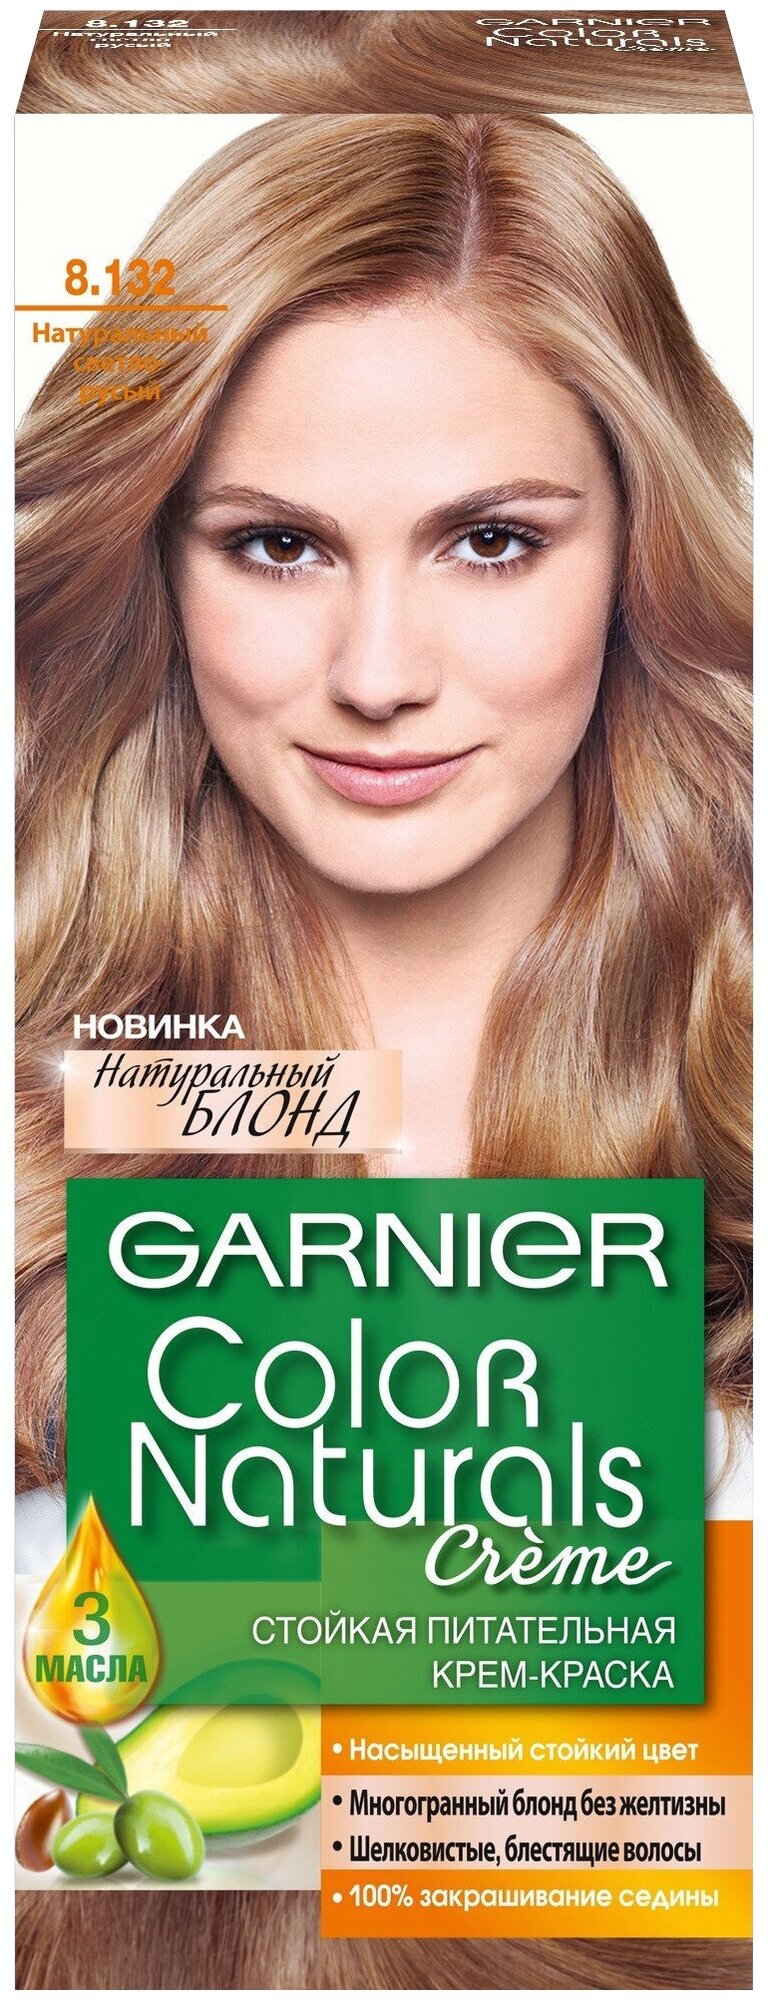 Крем-краска для волос Garnier Color Naturals 4.1/2 Горький Шоколад 110 мл - фото №3